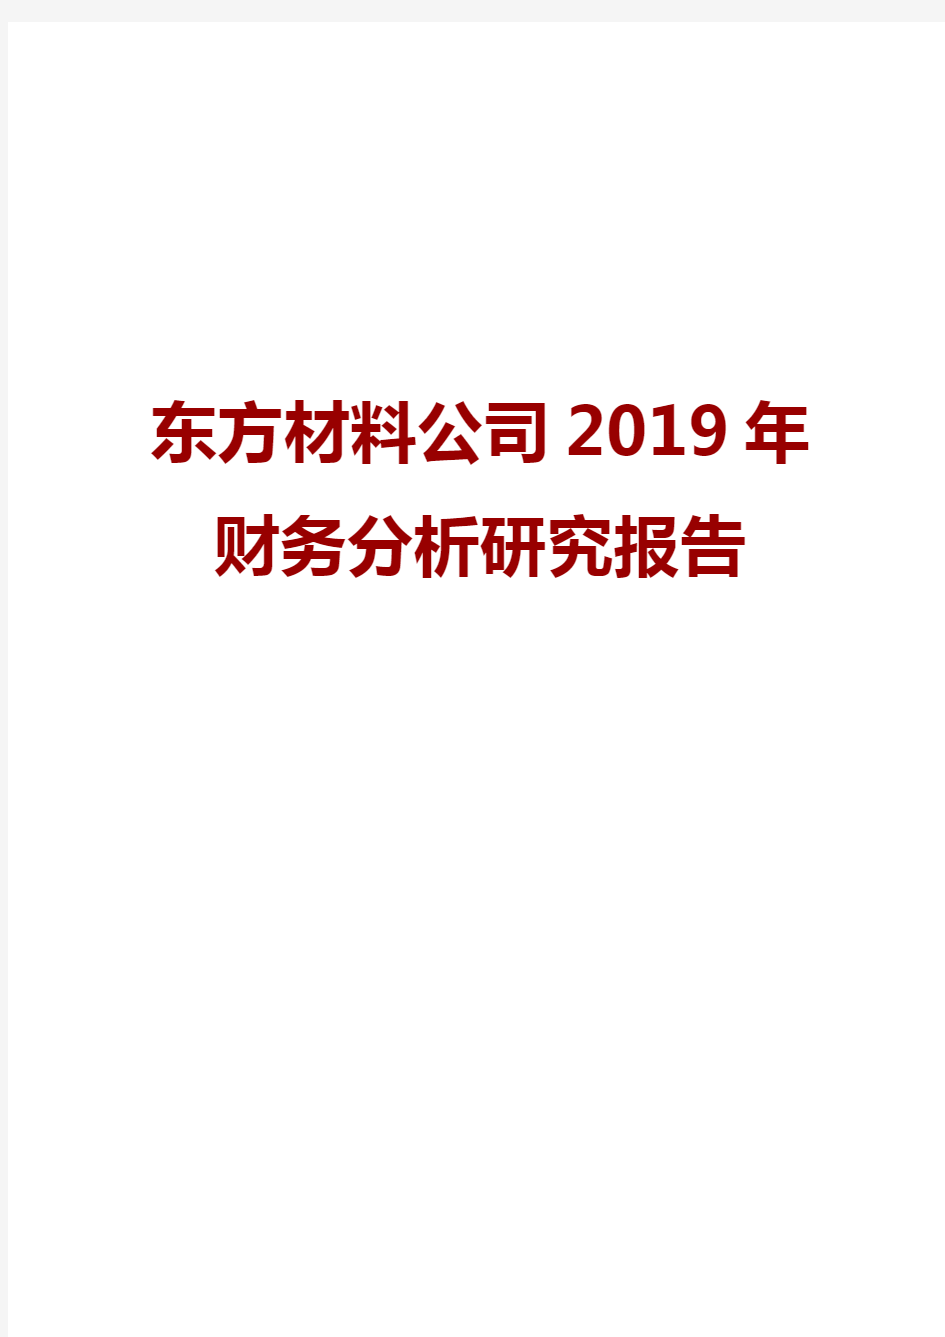 东方材料公司2019年财务分析研究报告